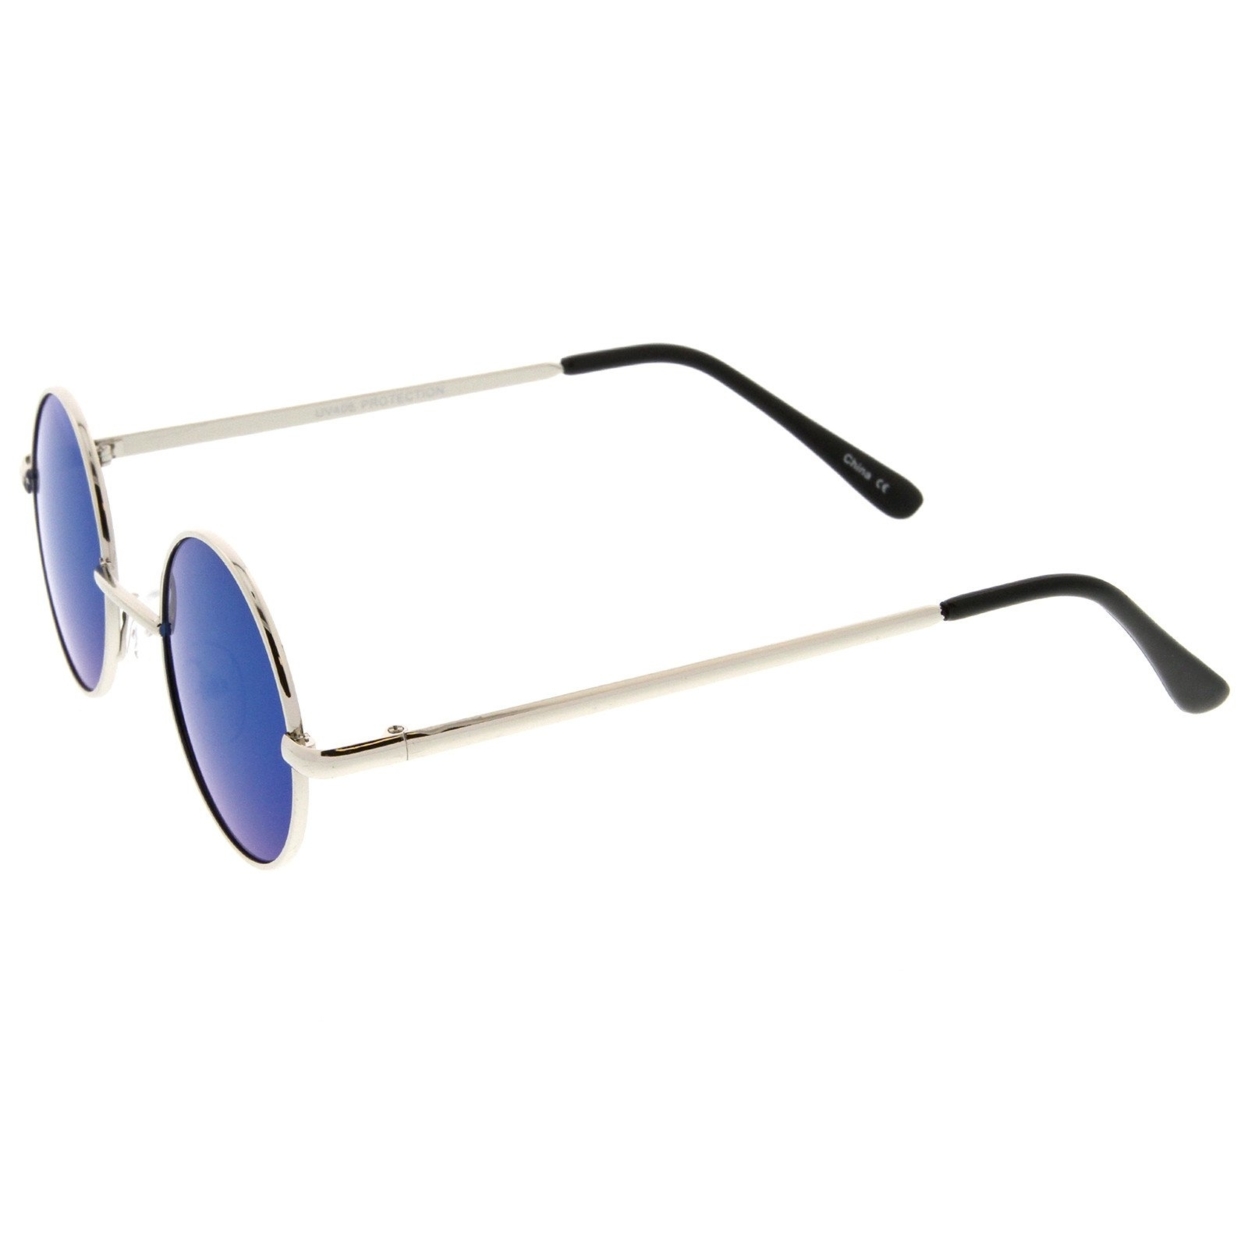 Small Retro Lennon Style Colored Mirror Lens Round Metal Sunglasses 41mm - Silver / Blue Mirror